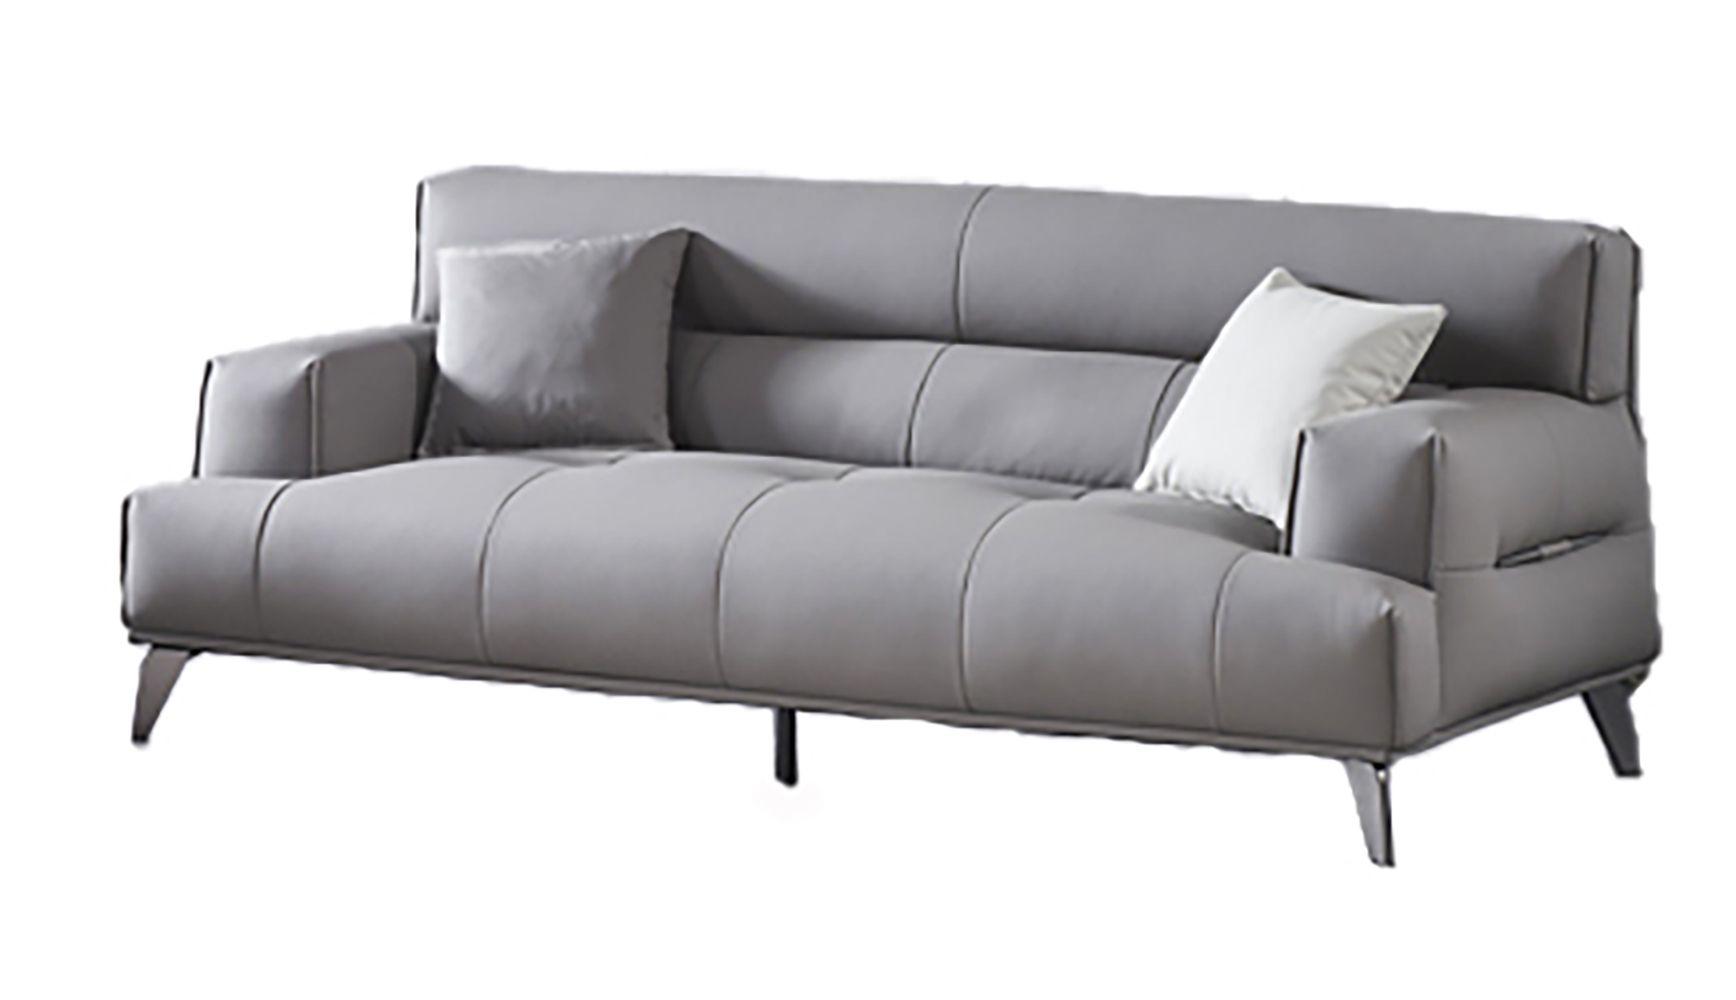 Contemporary Sofa AE2378-SF AE2378-SF in Gray Fabric